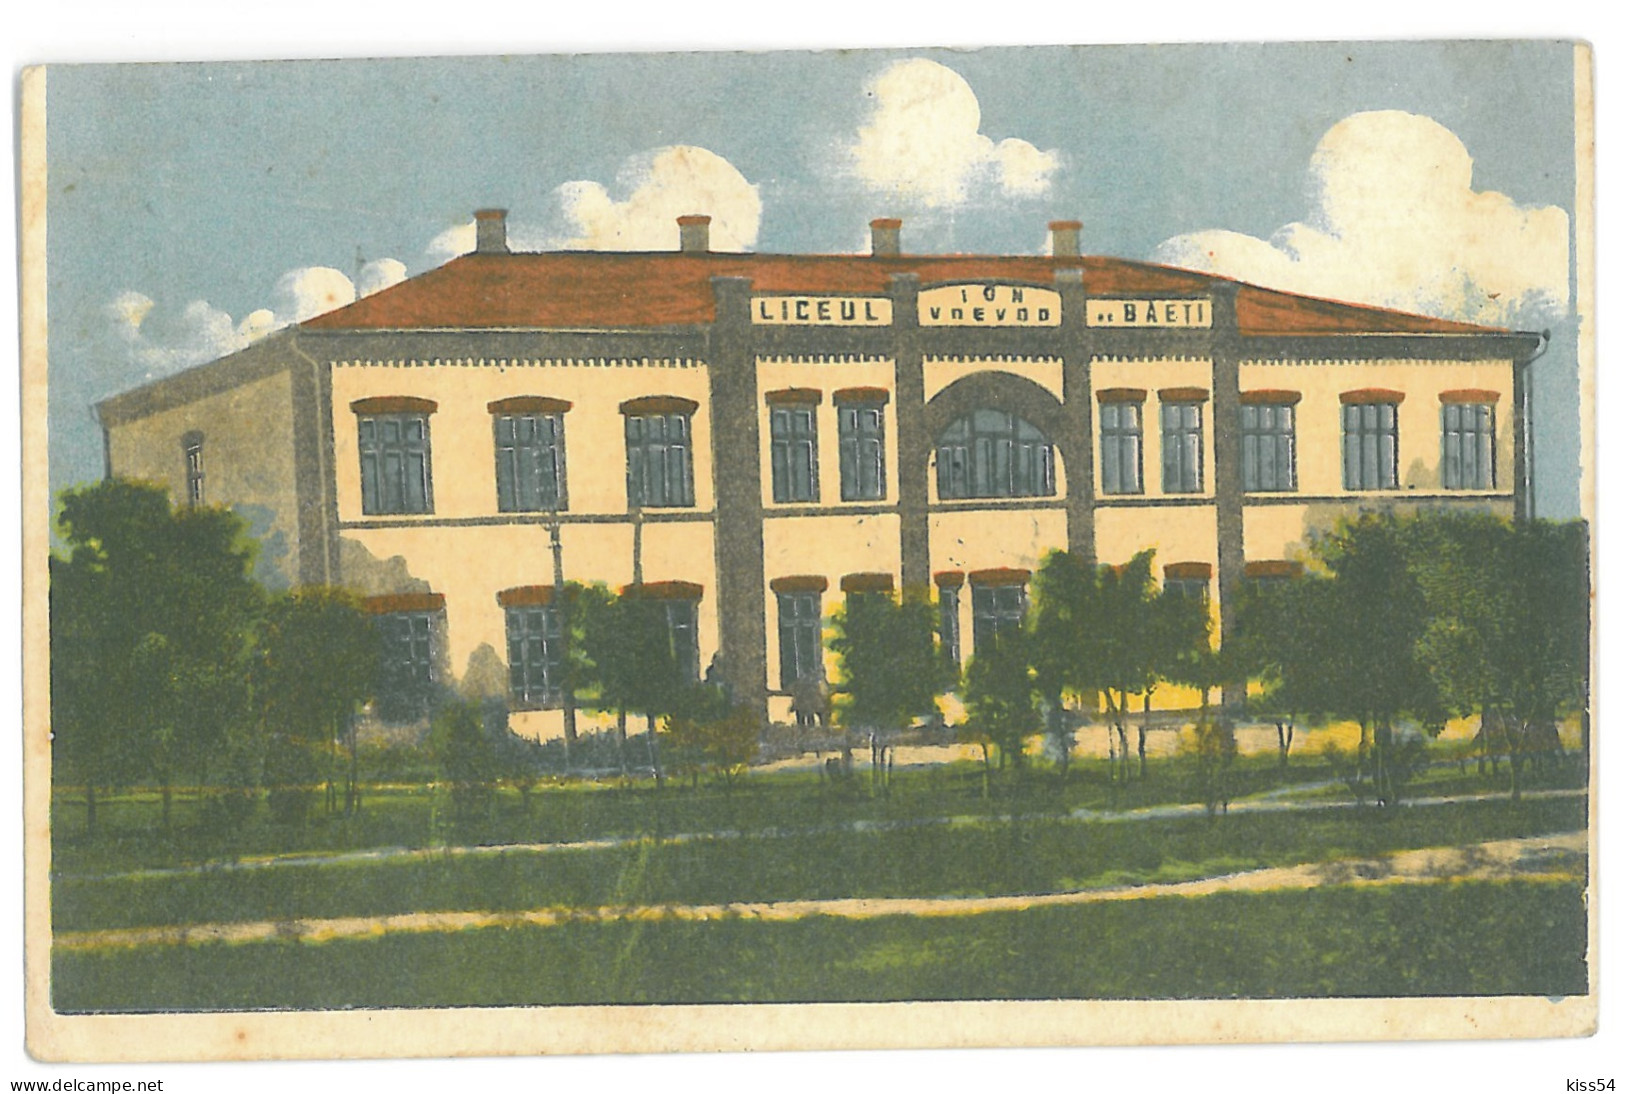 MOL 4 - 13918 KAHUL, Bessarabia, Moldova, High School Ion Voievod - Old Postcard - Used - 1927 - Moldavia